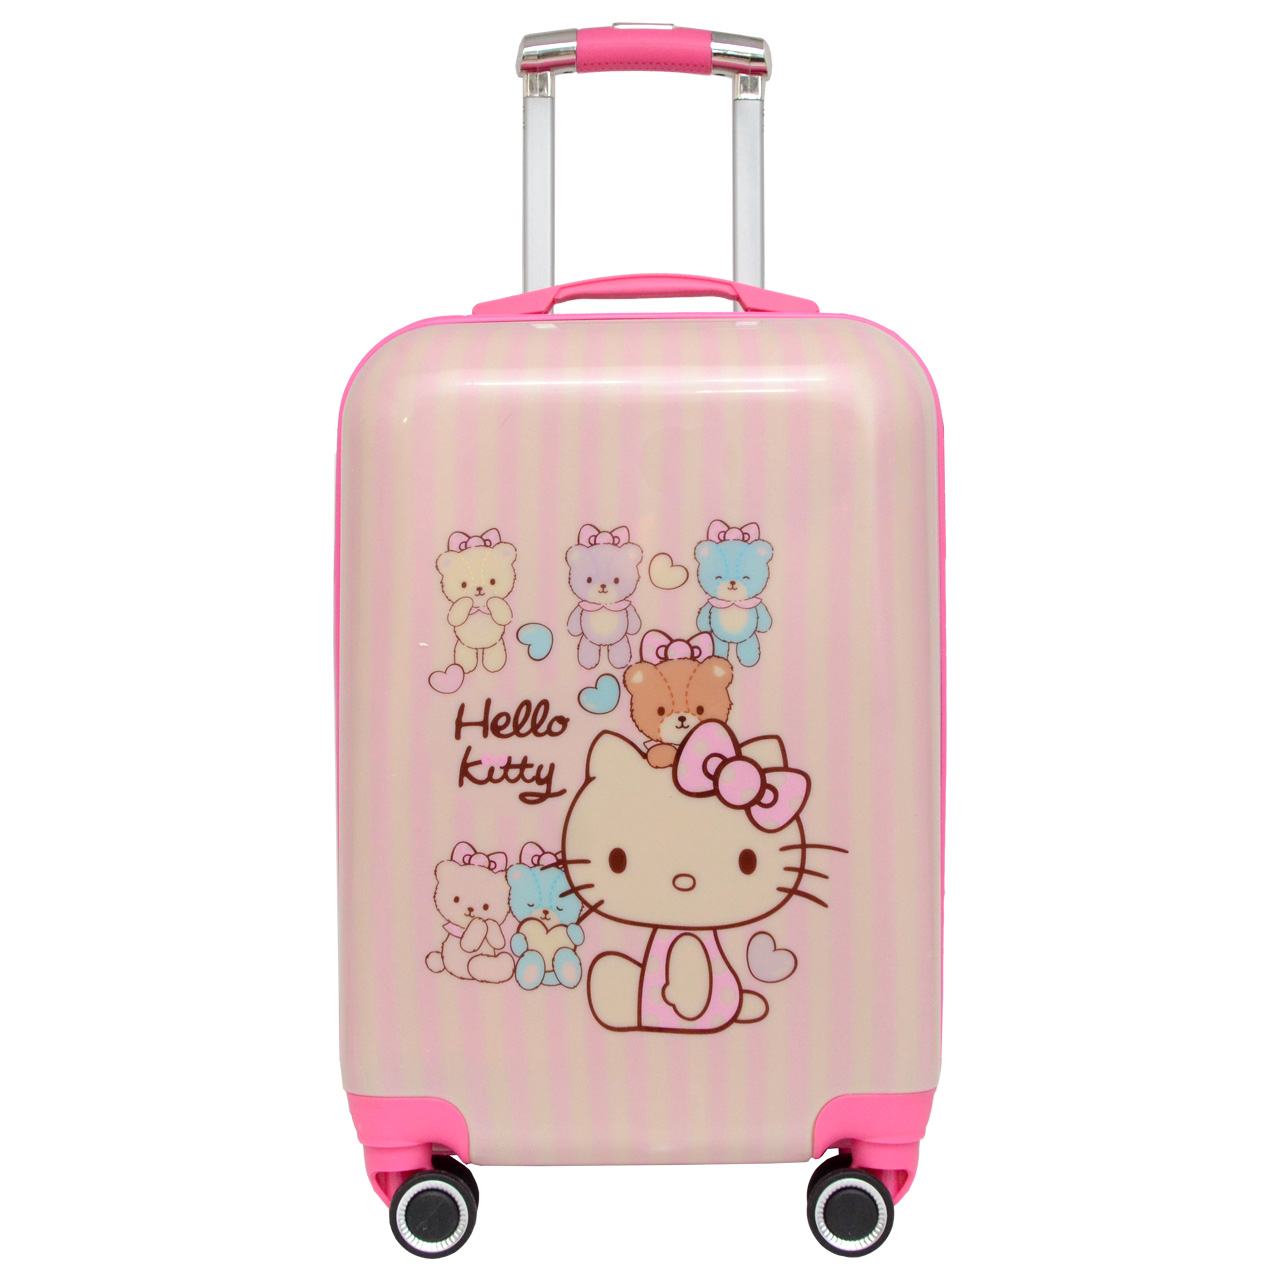  چمدان کودک کد HO 700368 - 2